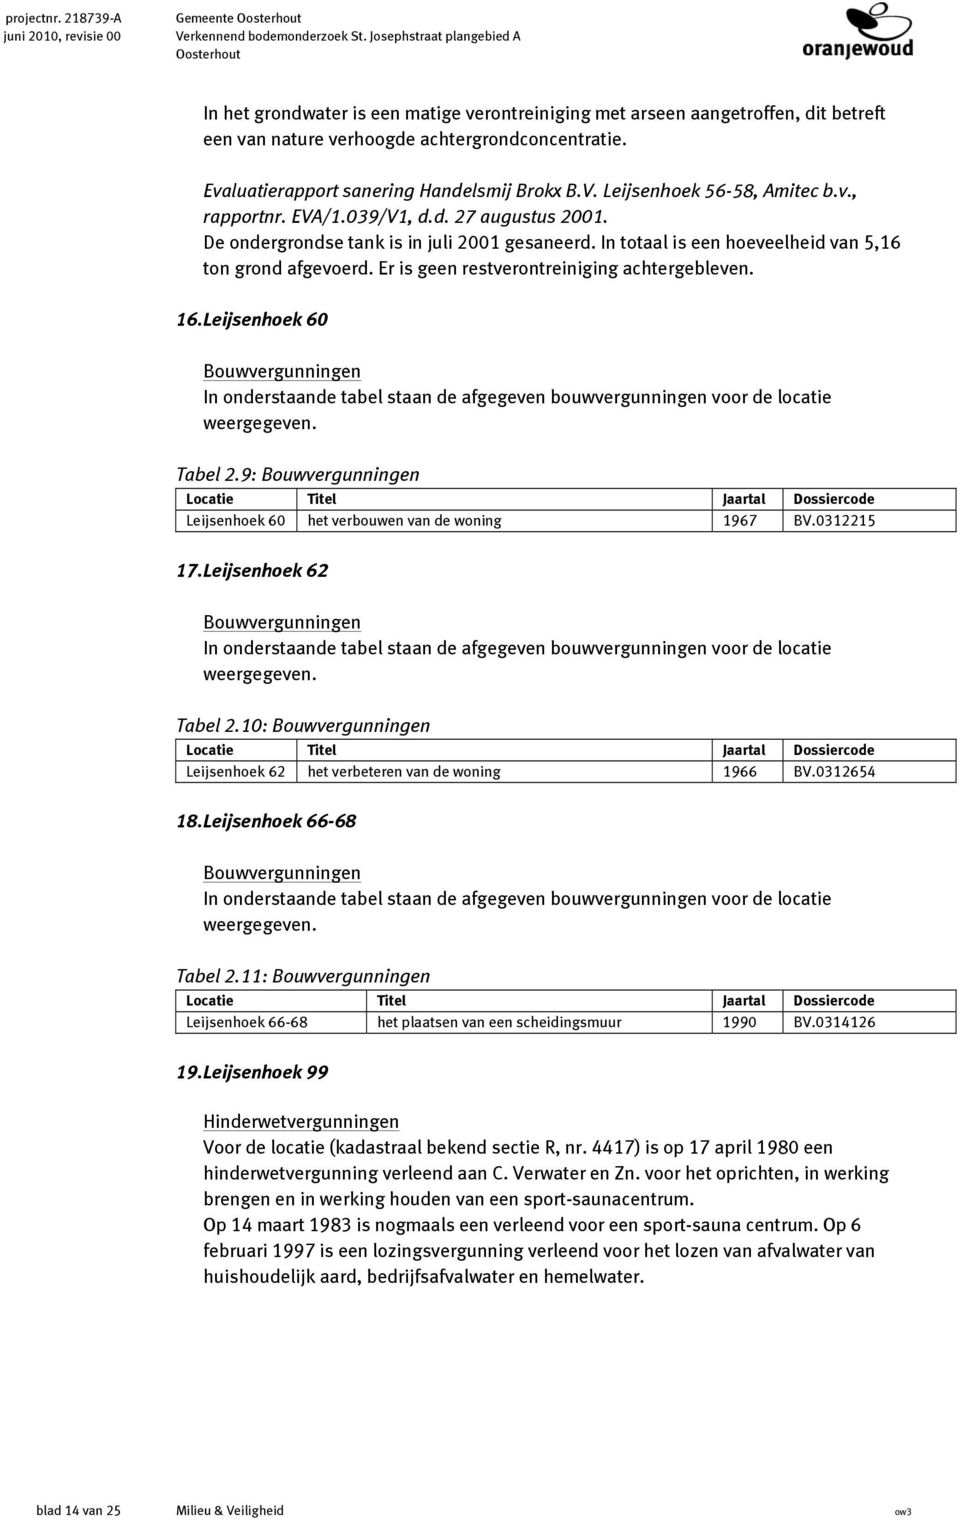 Evaluatierapport sanering Handelsmij Brokx B.V. Leijsenhoek 56-58, Amitec b.v., rapportnr. EVA/1.39/V1, d.d. 27 augustus 21. De ondergrondse tank is in juli 21 gesaneerd.